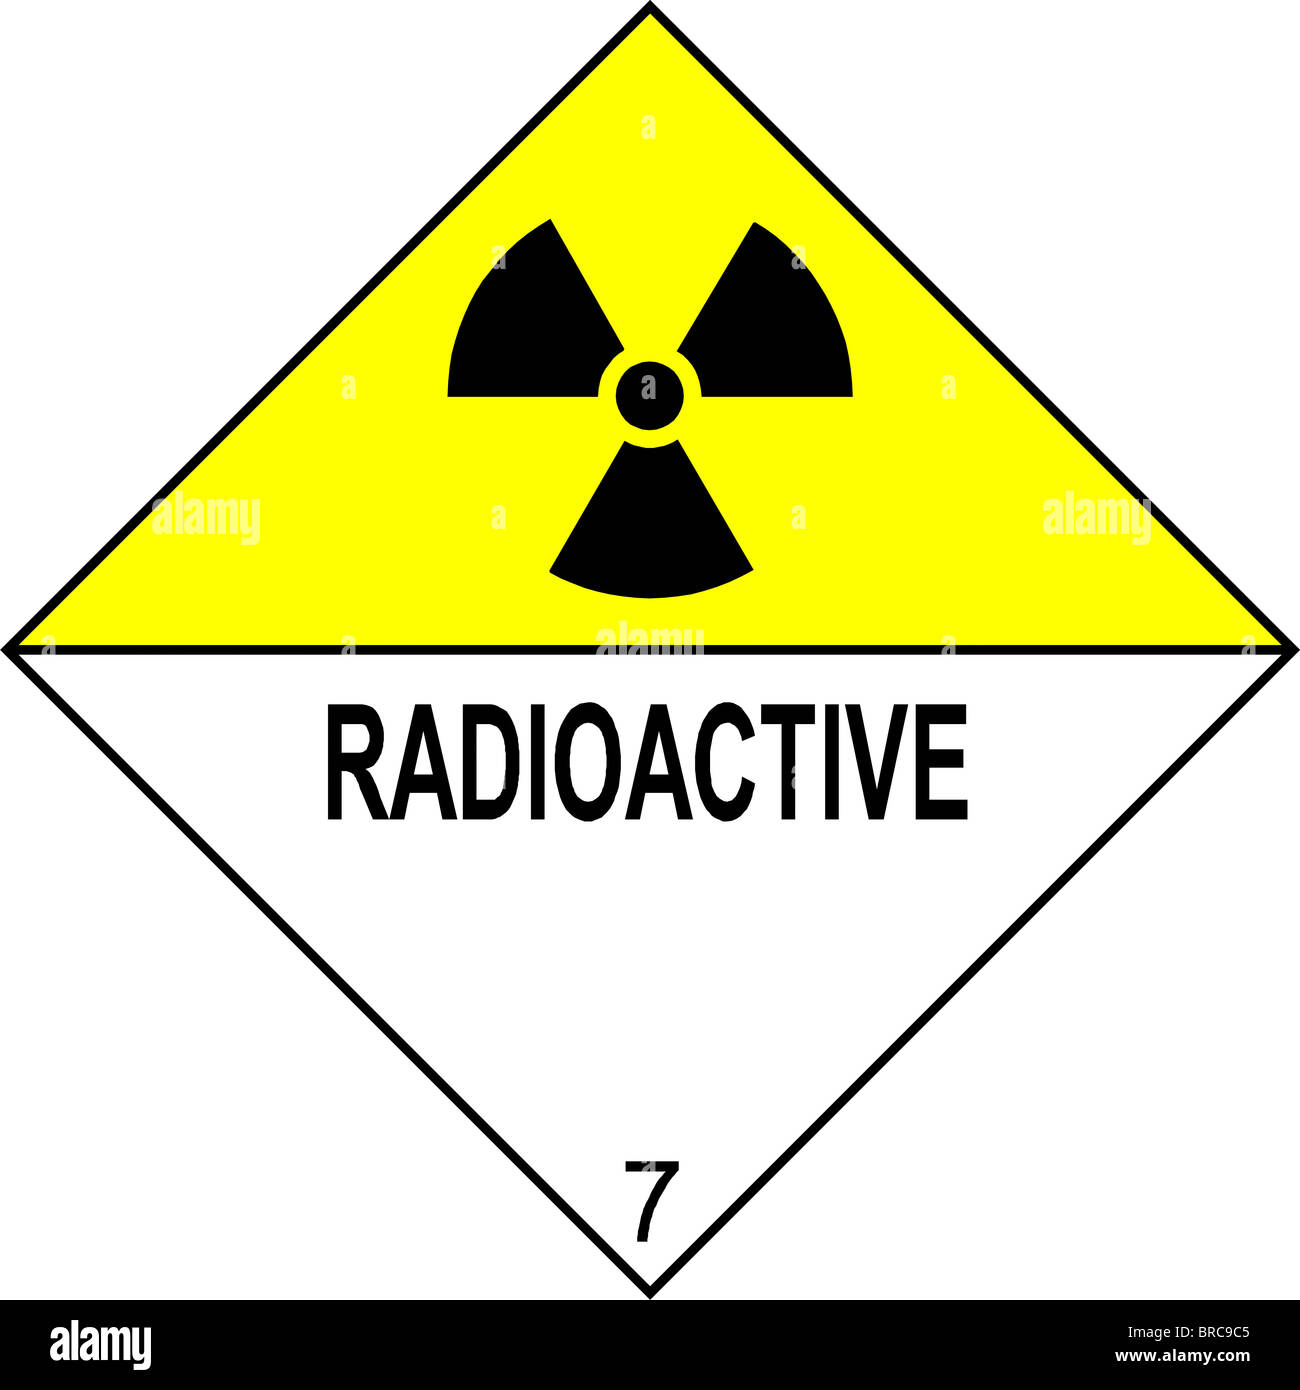 radioactive warning sign Stock Photo